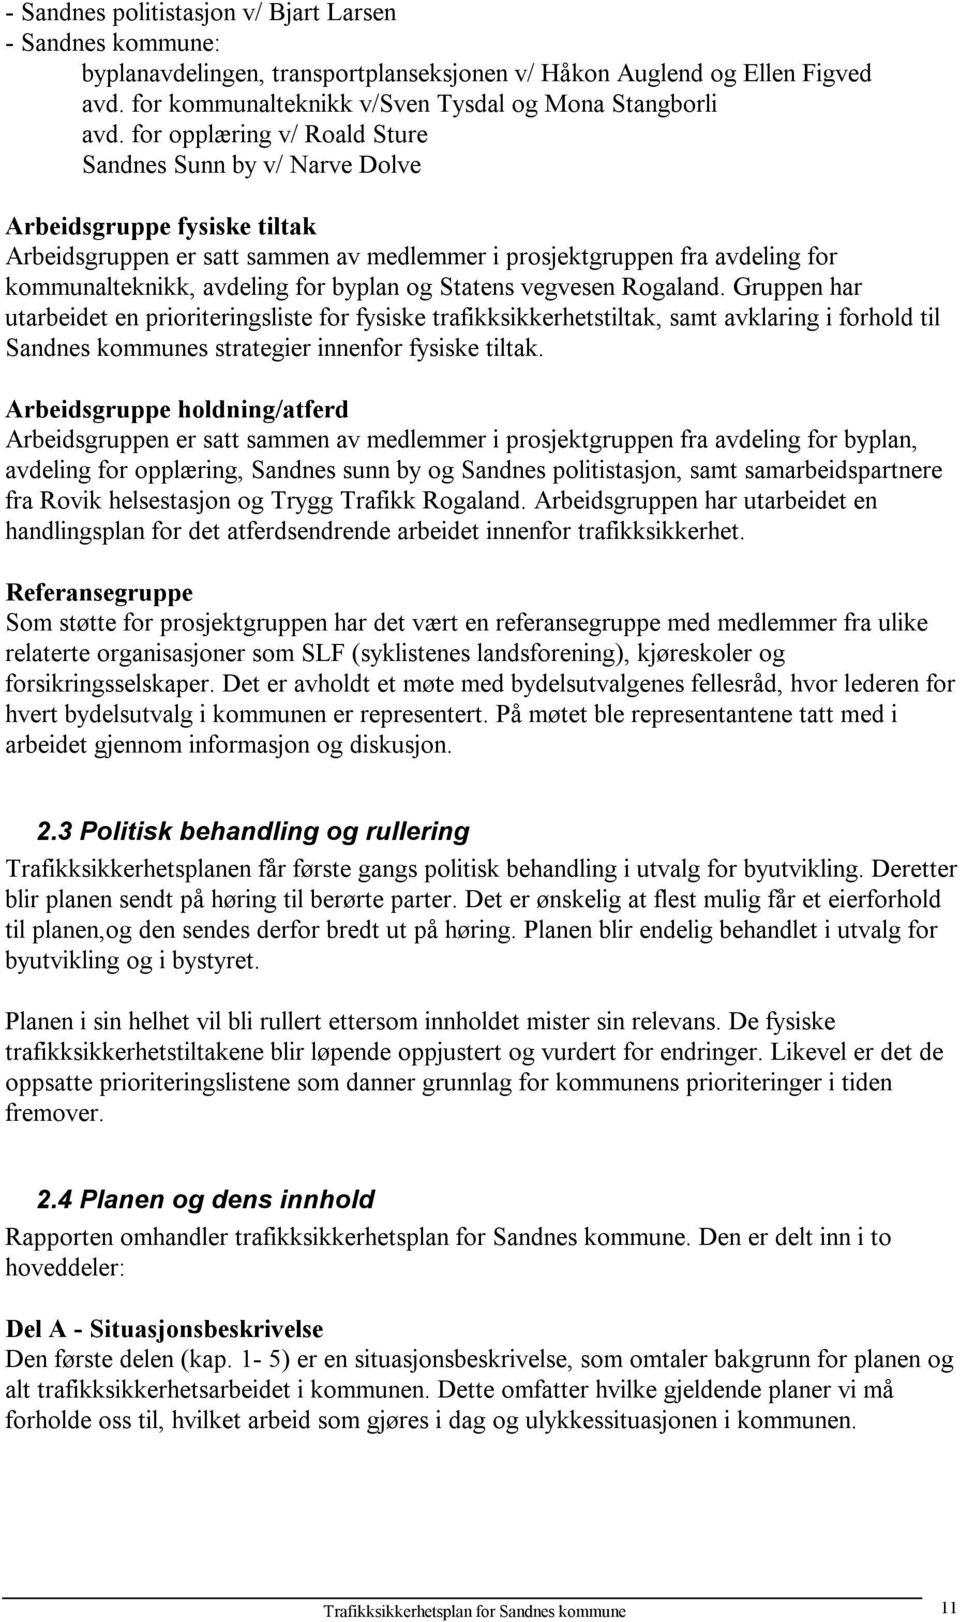 byplan og Statens vegvesen Rogaland. Gruppen har utarbeidet en prioriteringsliste for fysiske trafikksikkerhetstiltak, samt avklaring i forhold til Sandnes kommunes strategier innenfor fysiske tiltak.